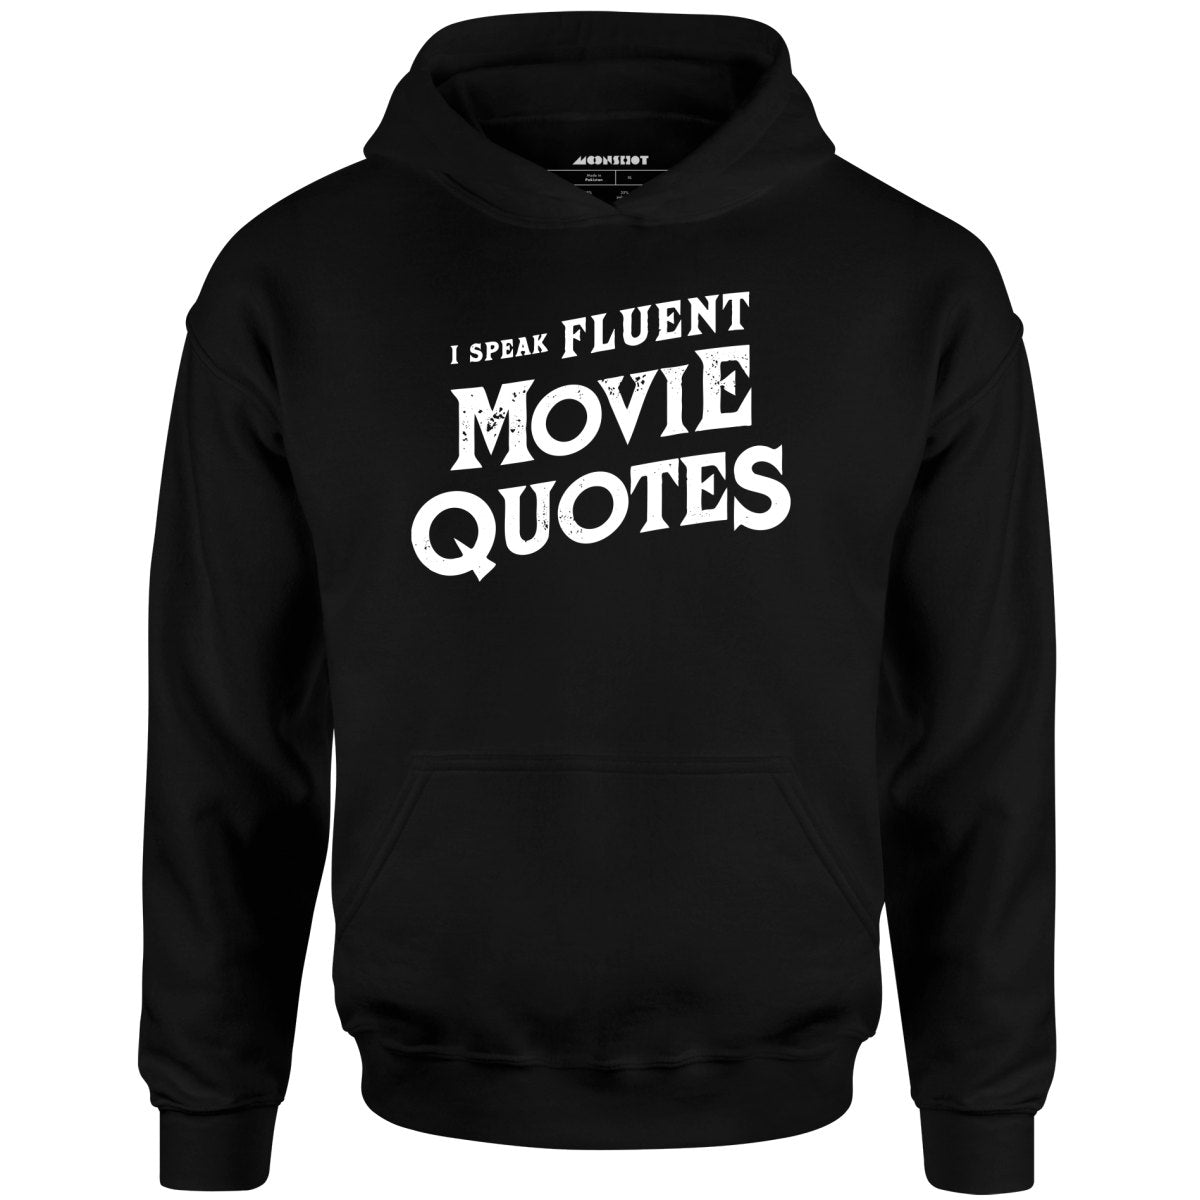 I Speak Fluent Movie Quotes - Unisex Hoodie